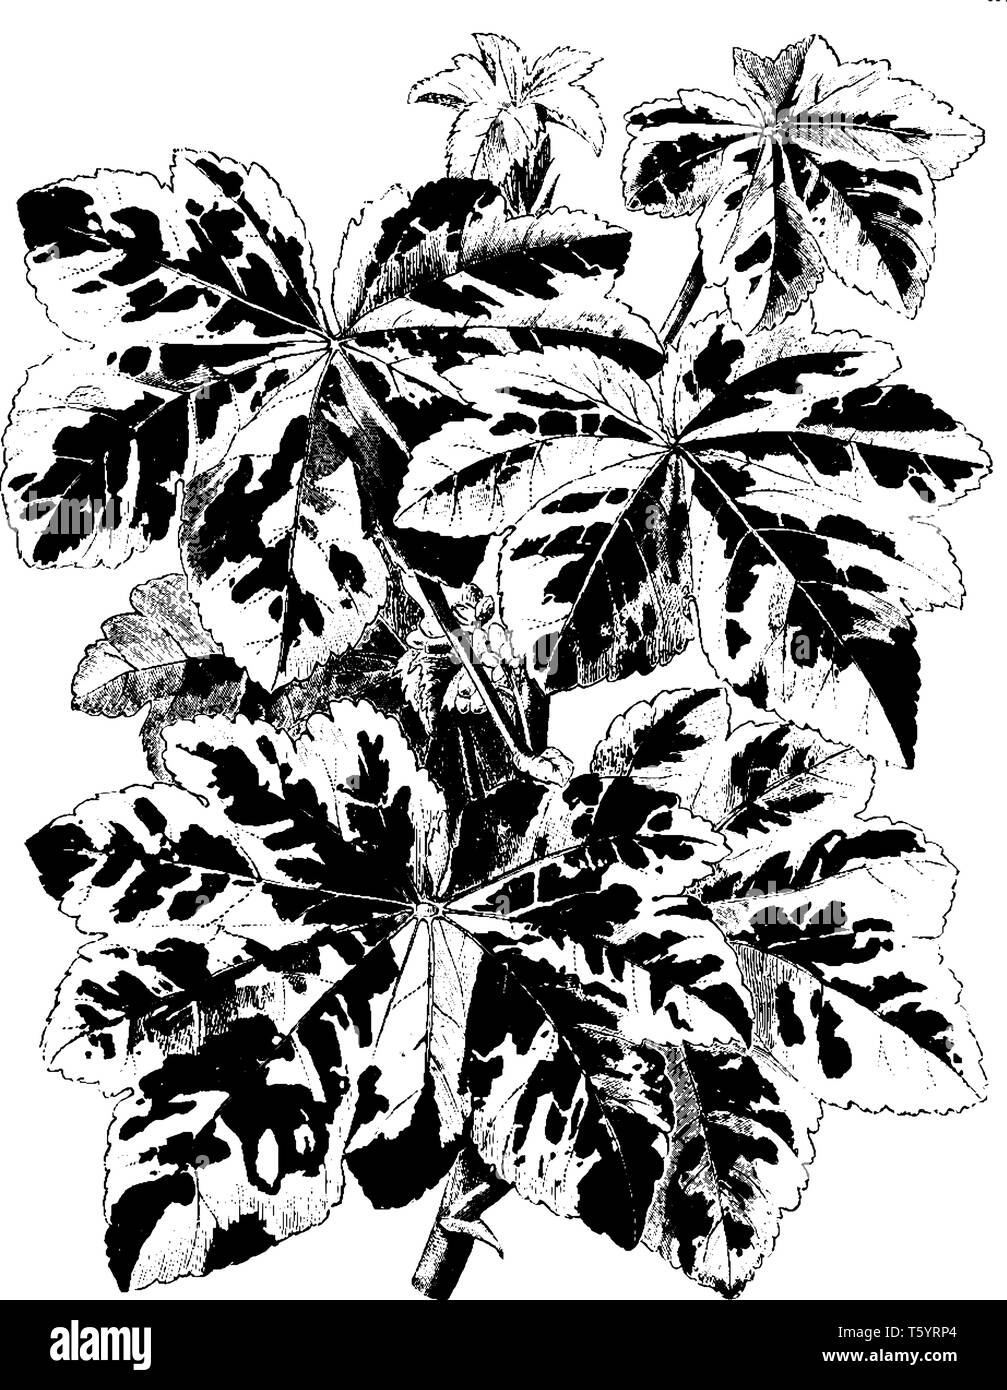 Lavatera Arborea variegata è la fioritura delle piante. I suoi fiori sono di colore viola pallido variegata. Essi sono vistosi fiori e foglie variegato, vintage line dr Illustrazione Vettoriale